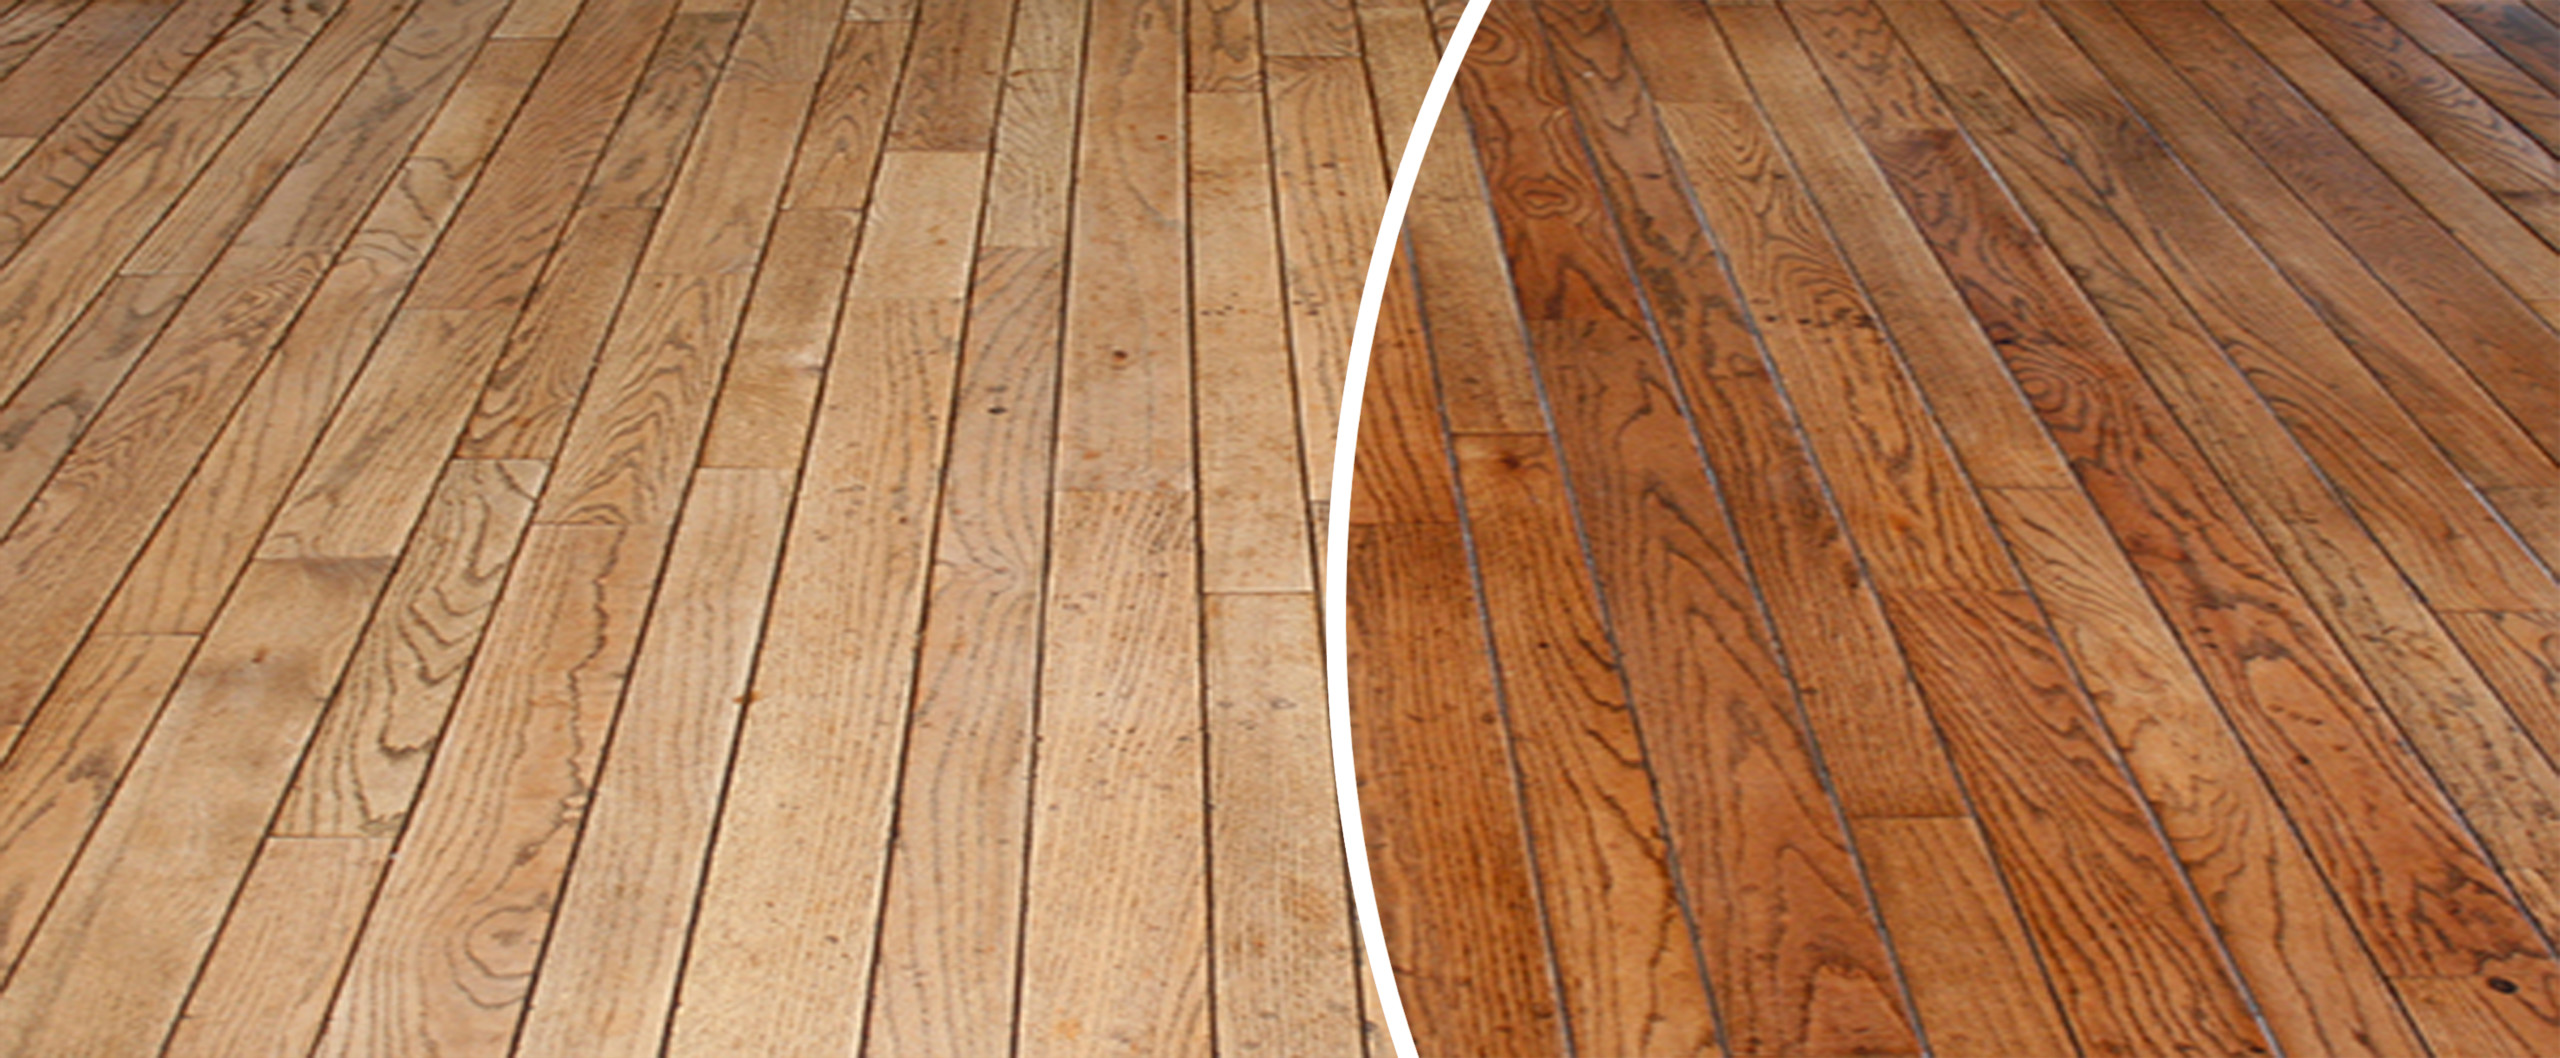 Hardwood Floor Refinishing East York